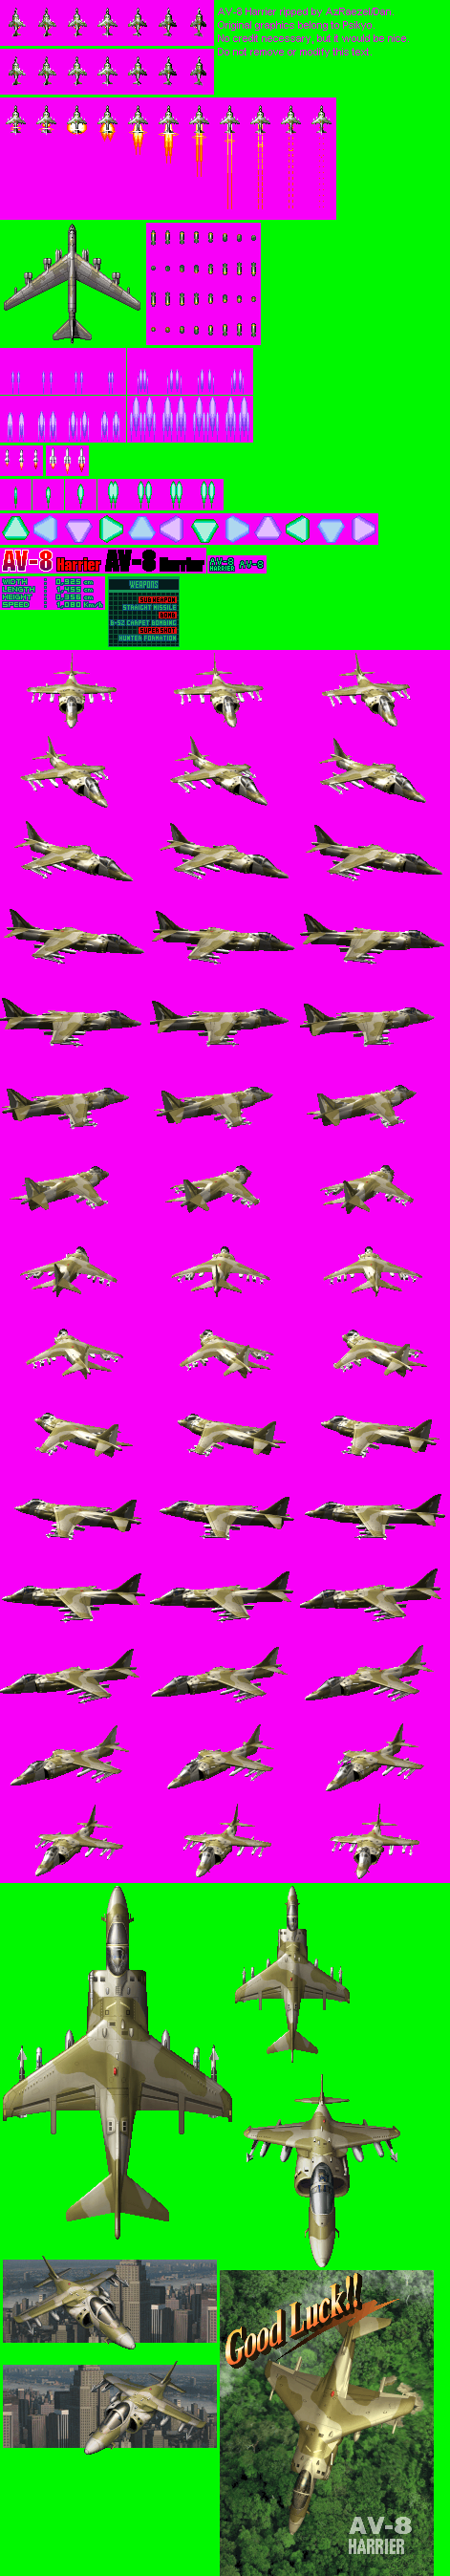 AV-8 Harrier